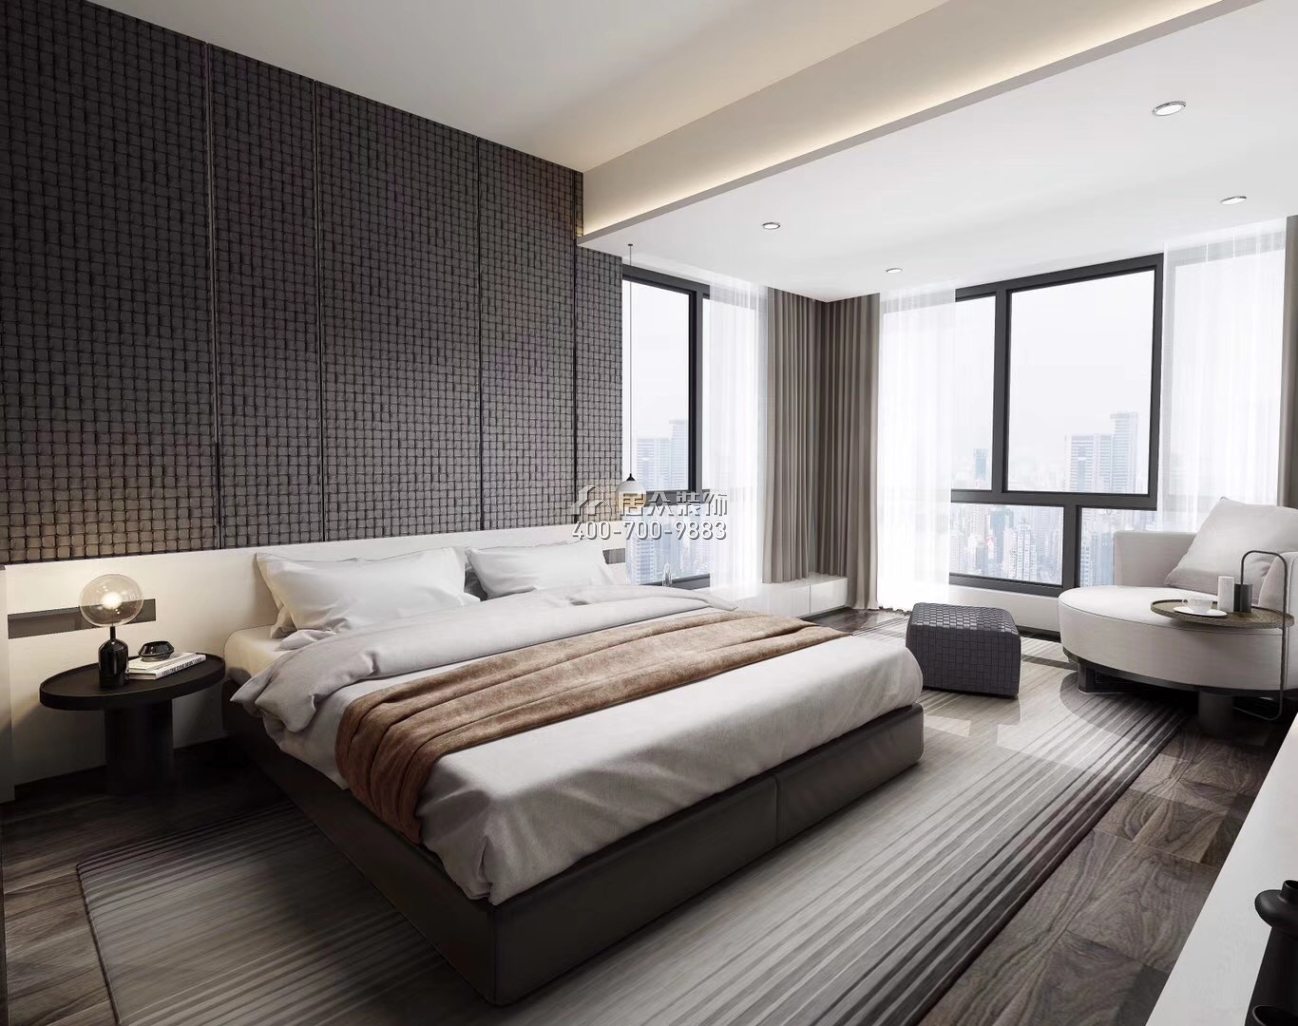 京基滨河时代广场188平方米现代简约风格平层户型卧室装修效果图